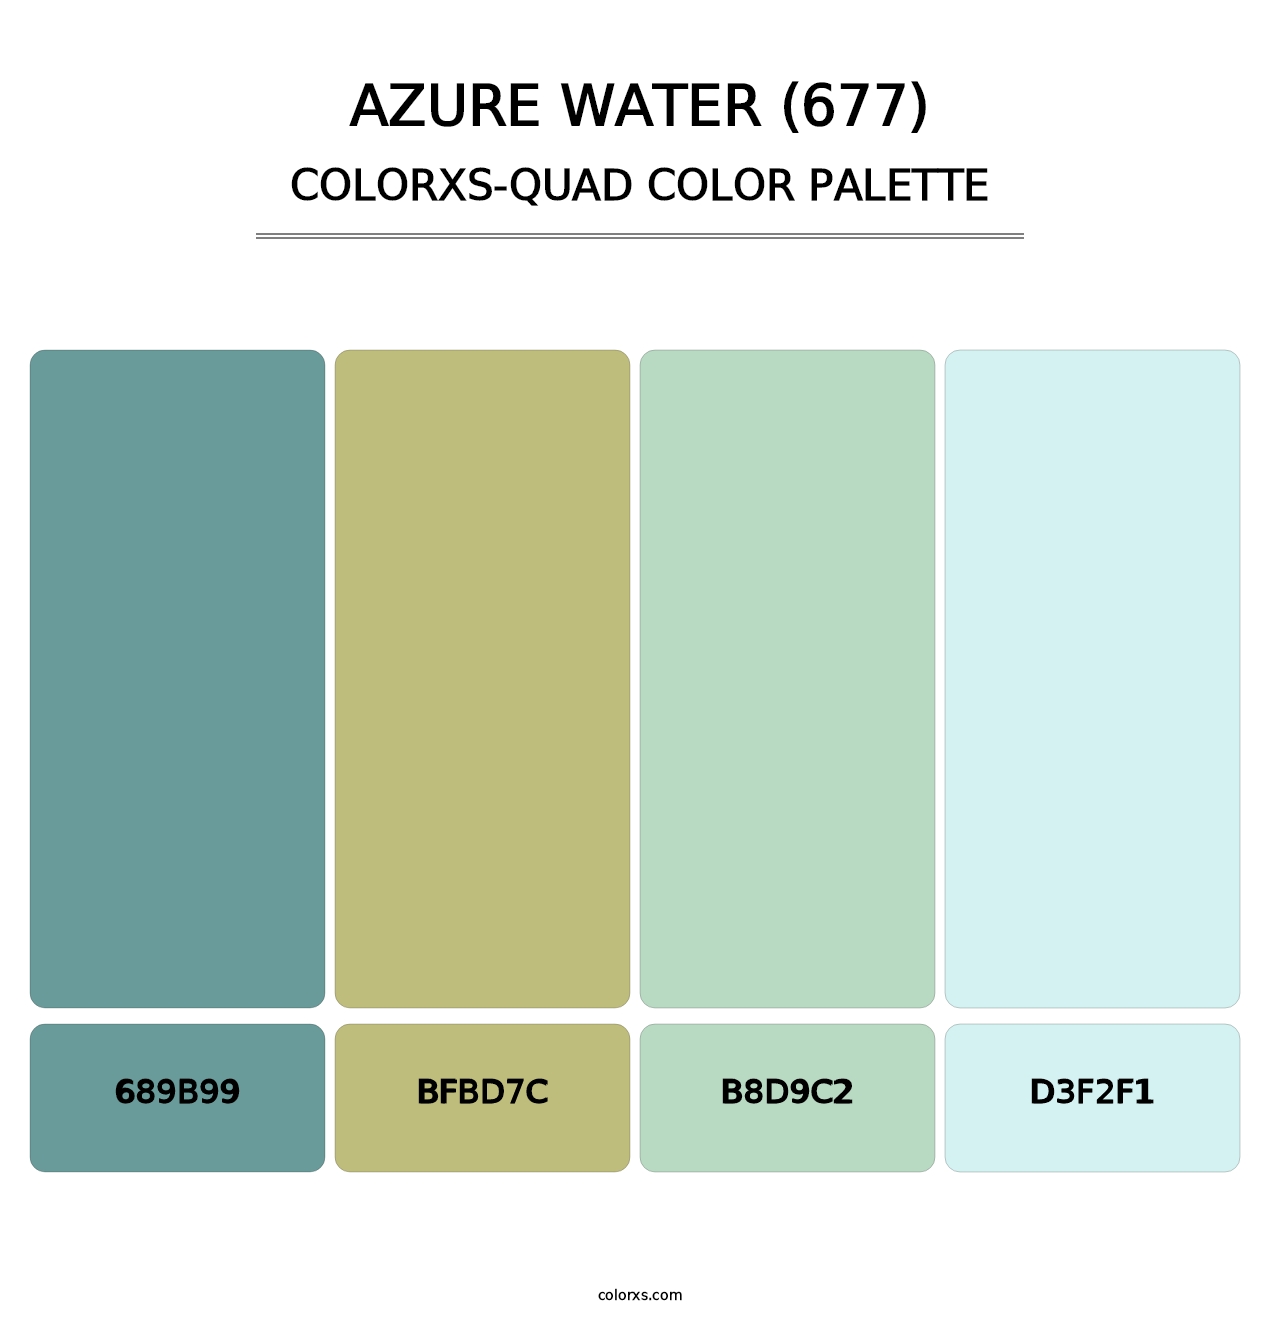 Azure Water (677) - Colorxs Quad Palette